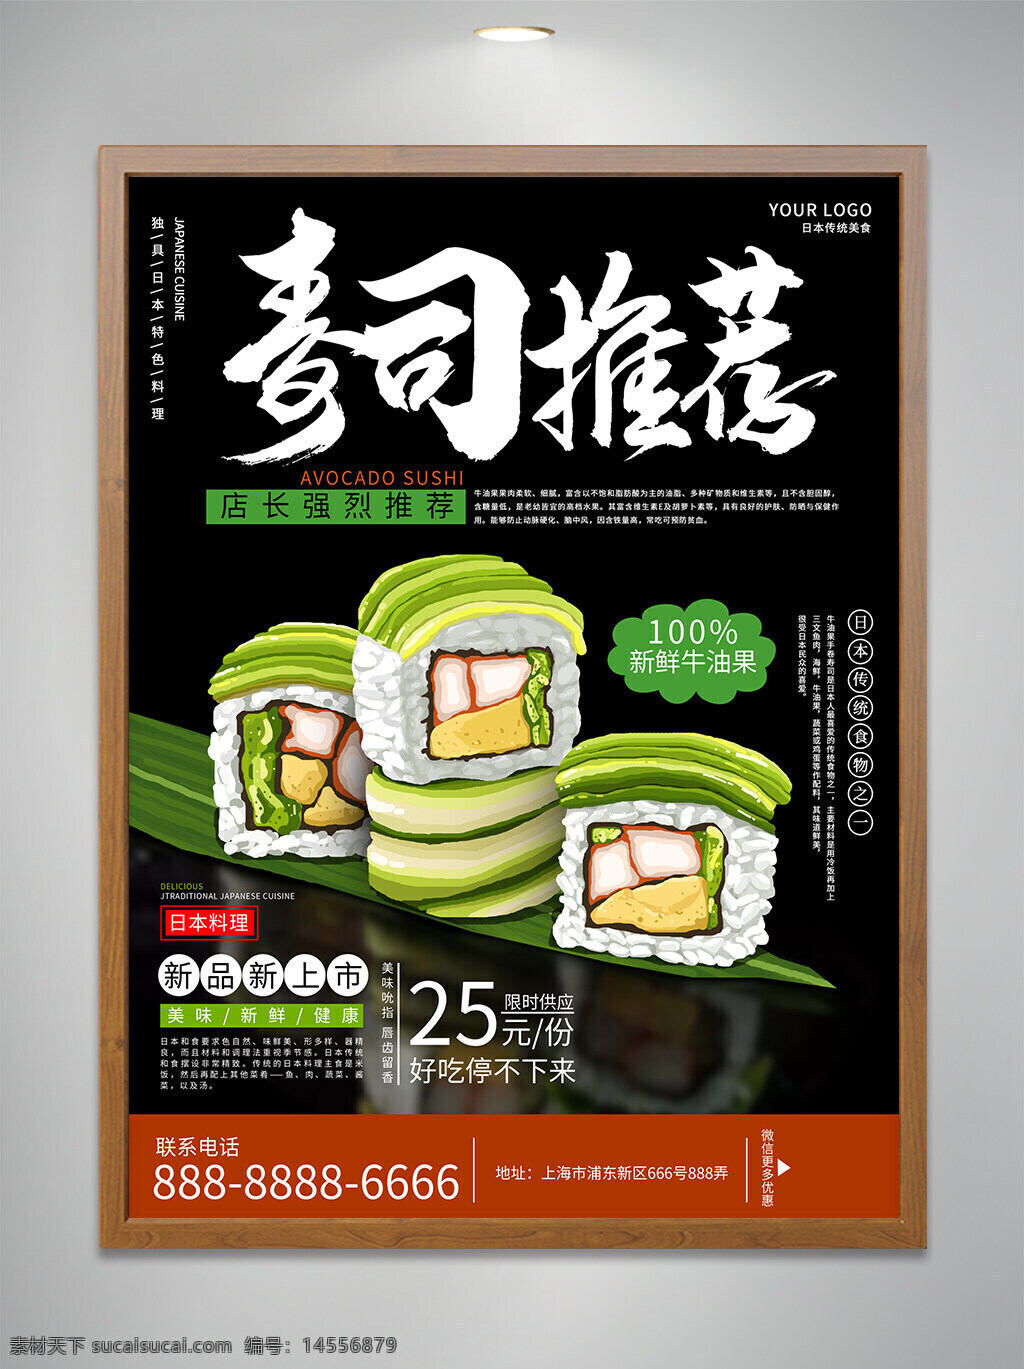 美味 寿司 美食 海报 设计 黑色 美食推荐 宣传海报 宣传单